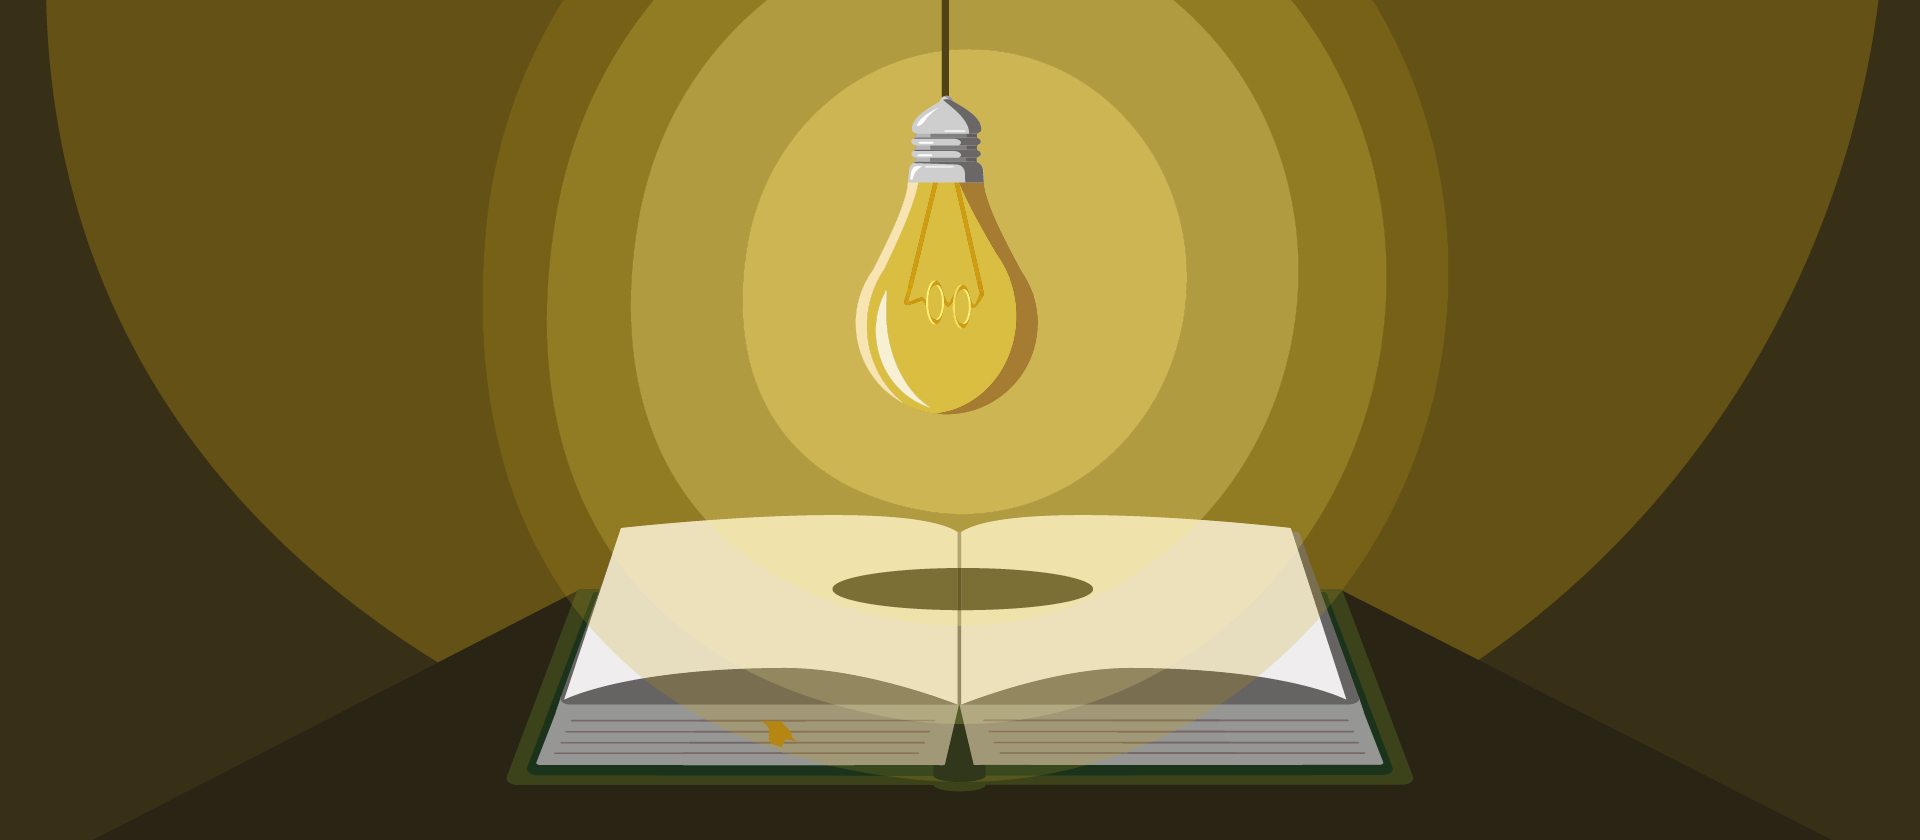 Grafik zur Lesung Fallada: Eine Glühbirne schwebt über einem Buch und wirft Schatten 